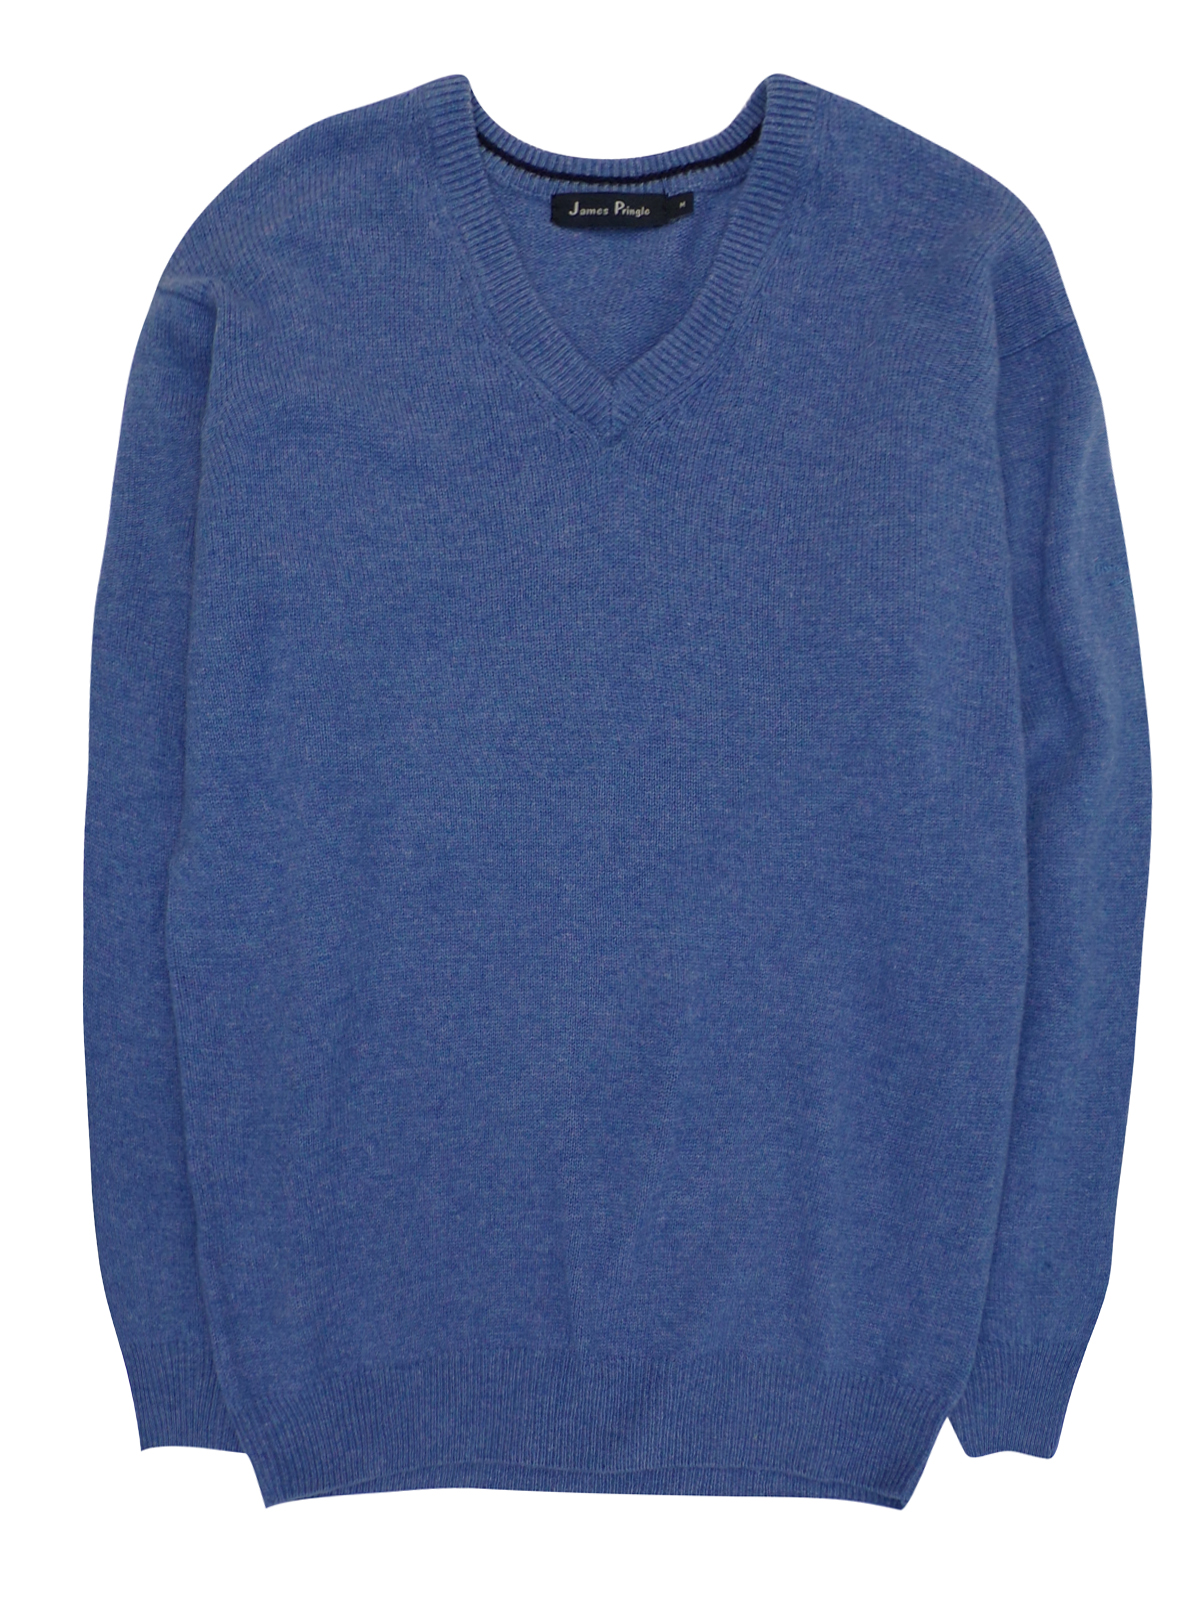 James Pringle - - James Pringle BLUE Pure Wool V-Neck Knitted Jumper ...